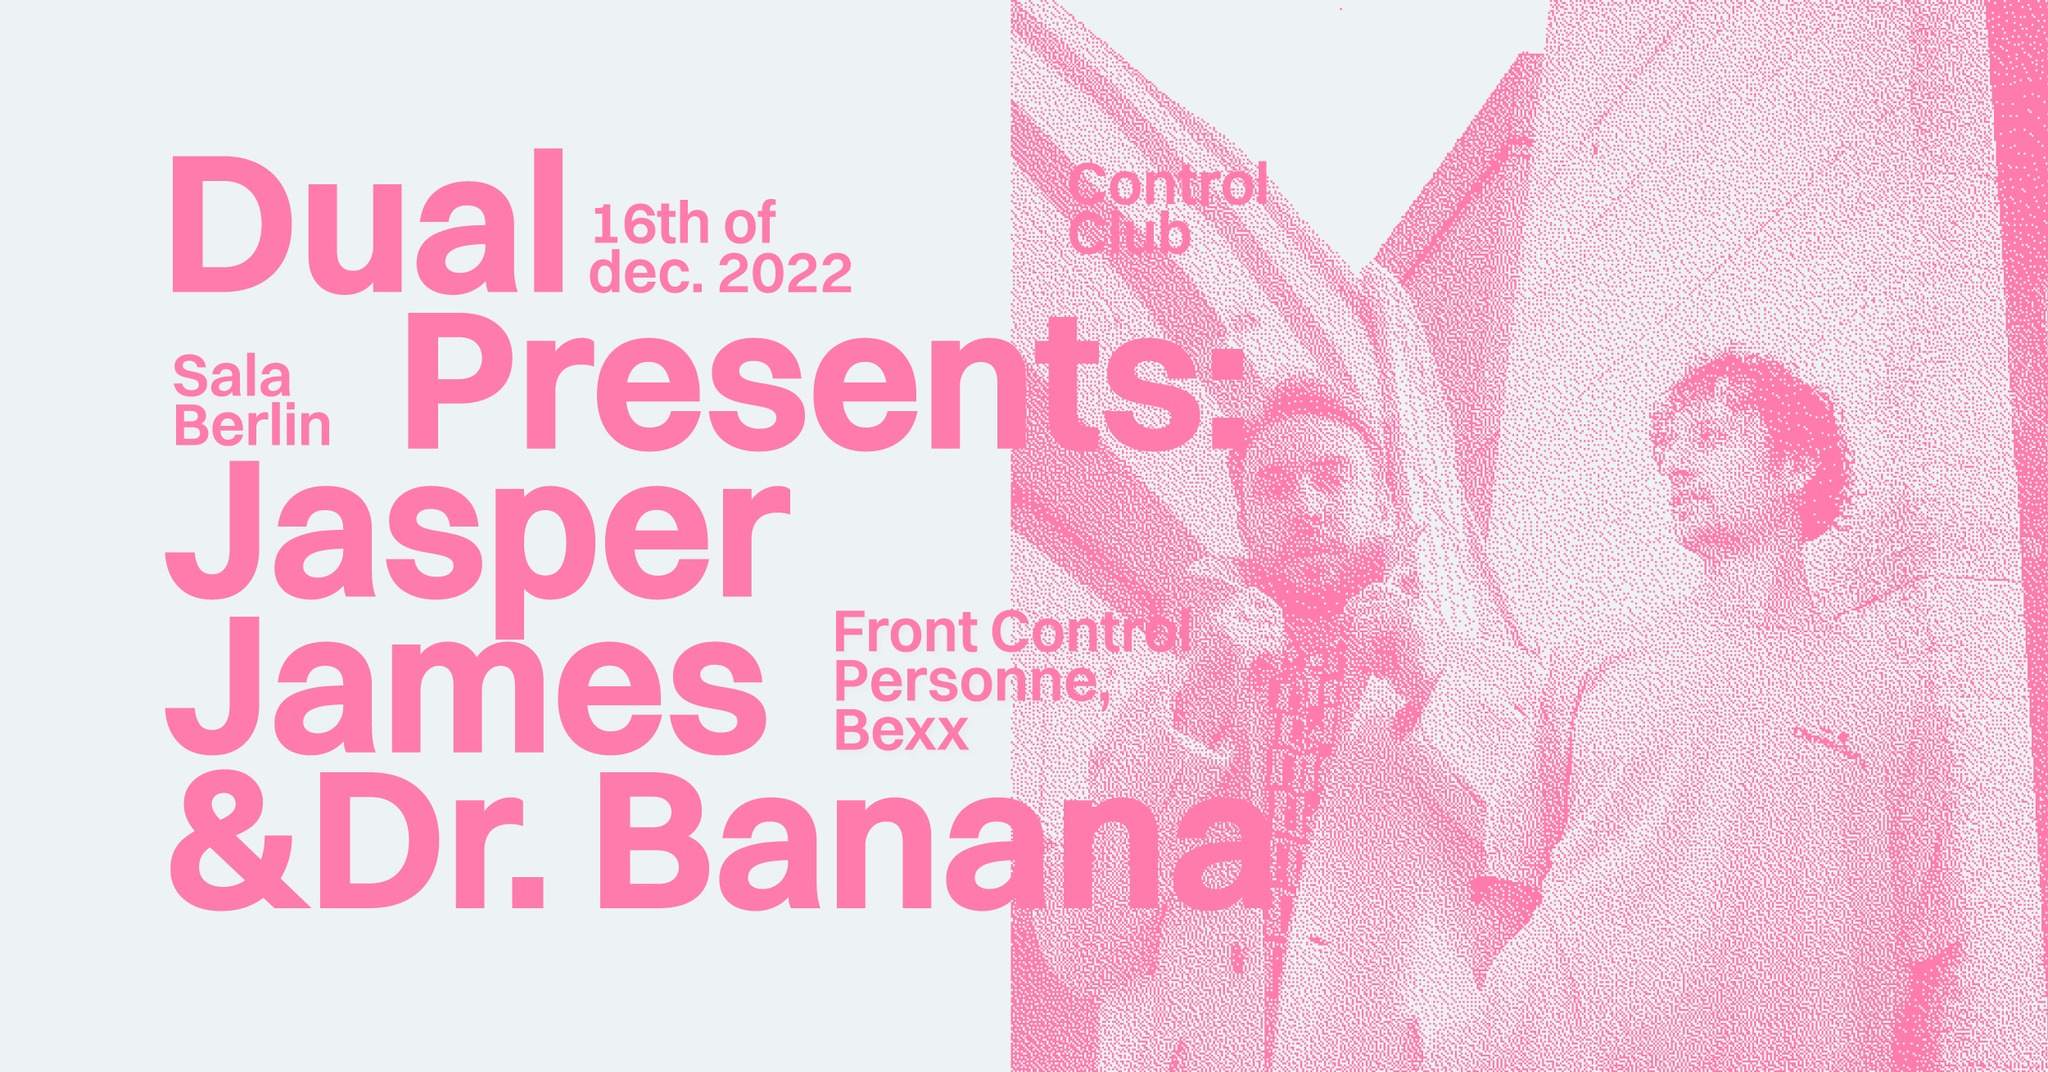 DUAL presents: Jasper James & Dr. Banana - Página frontal